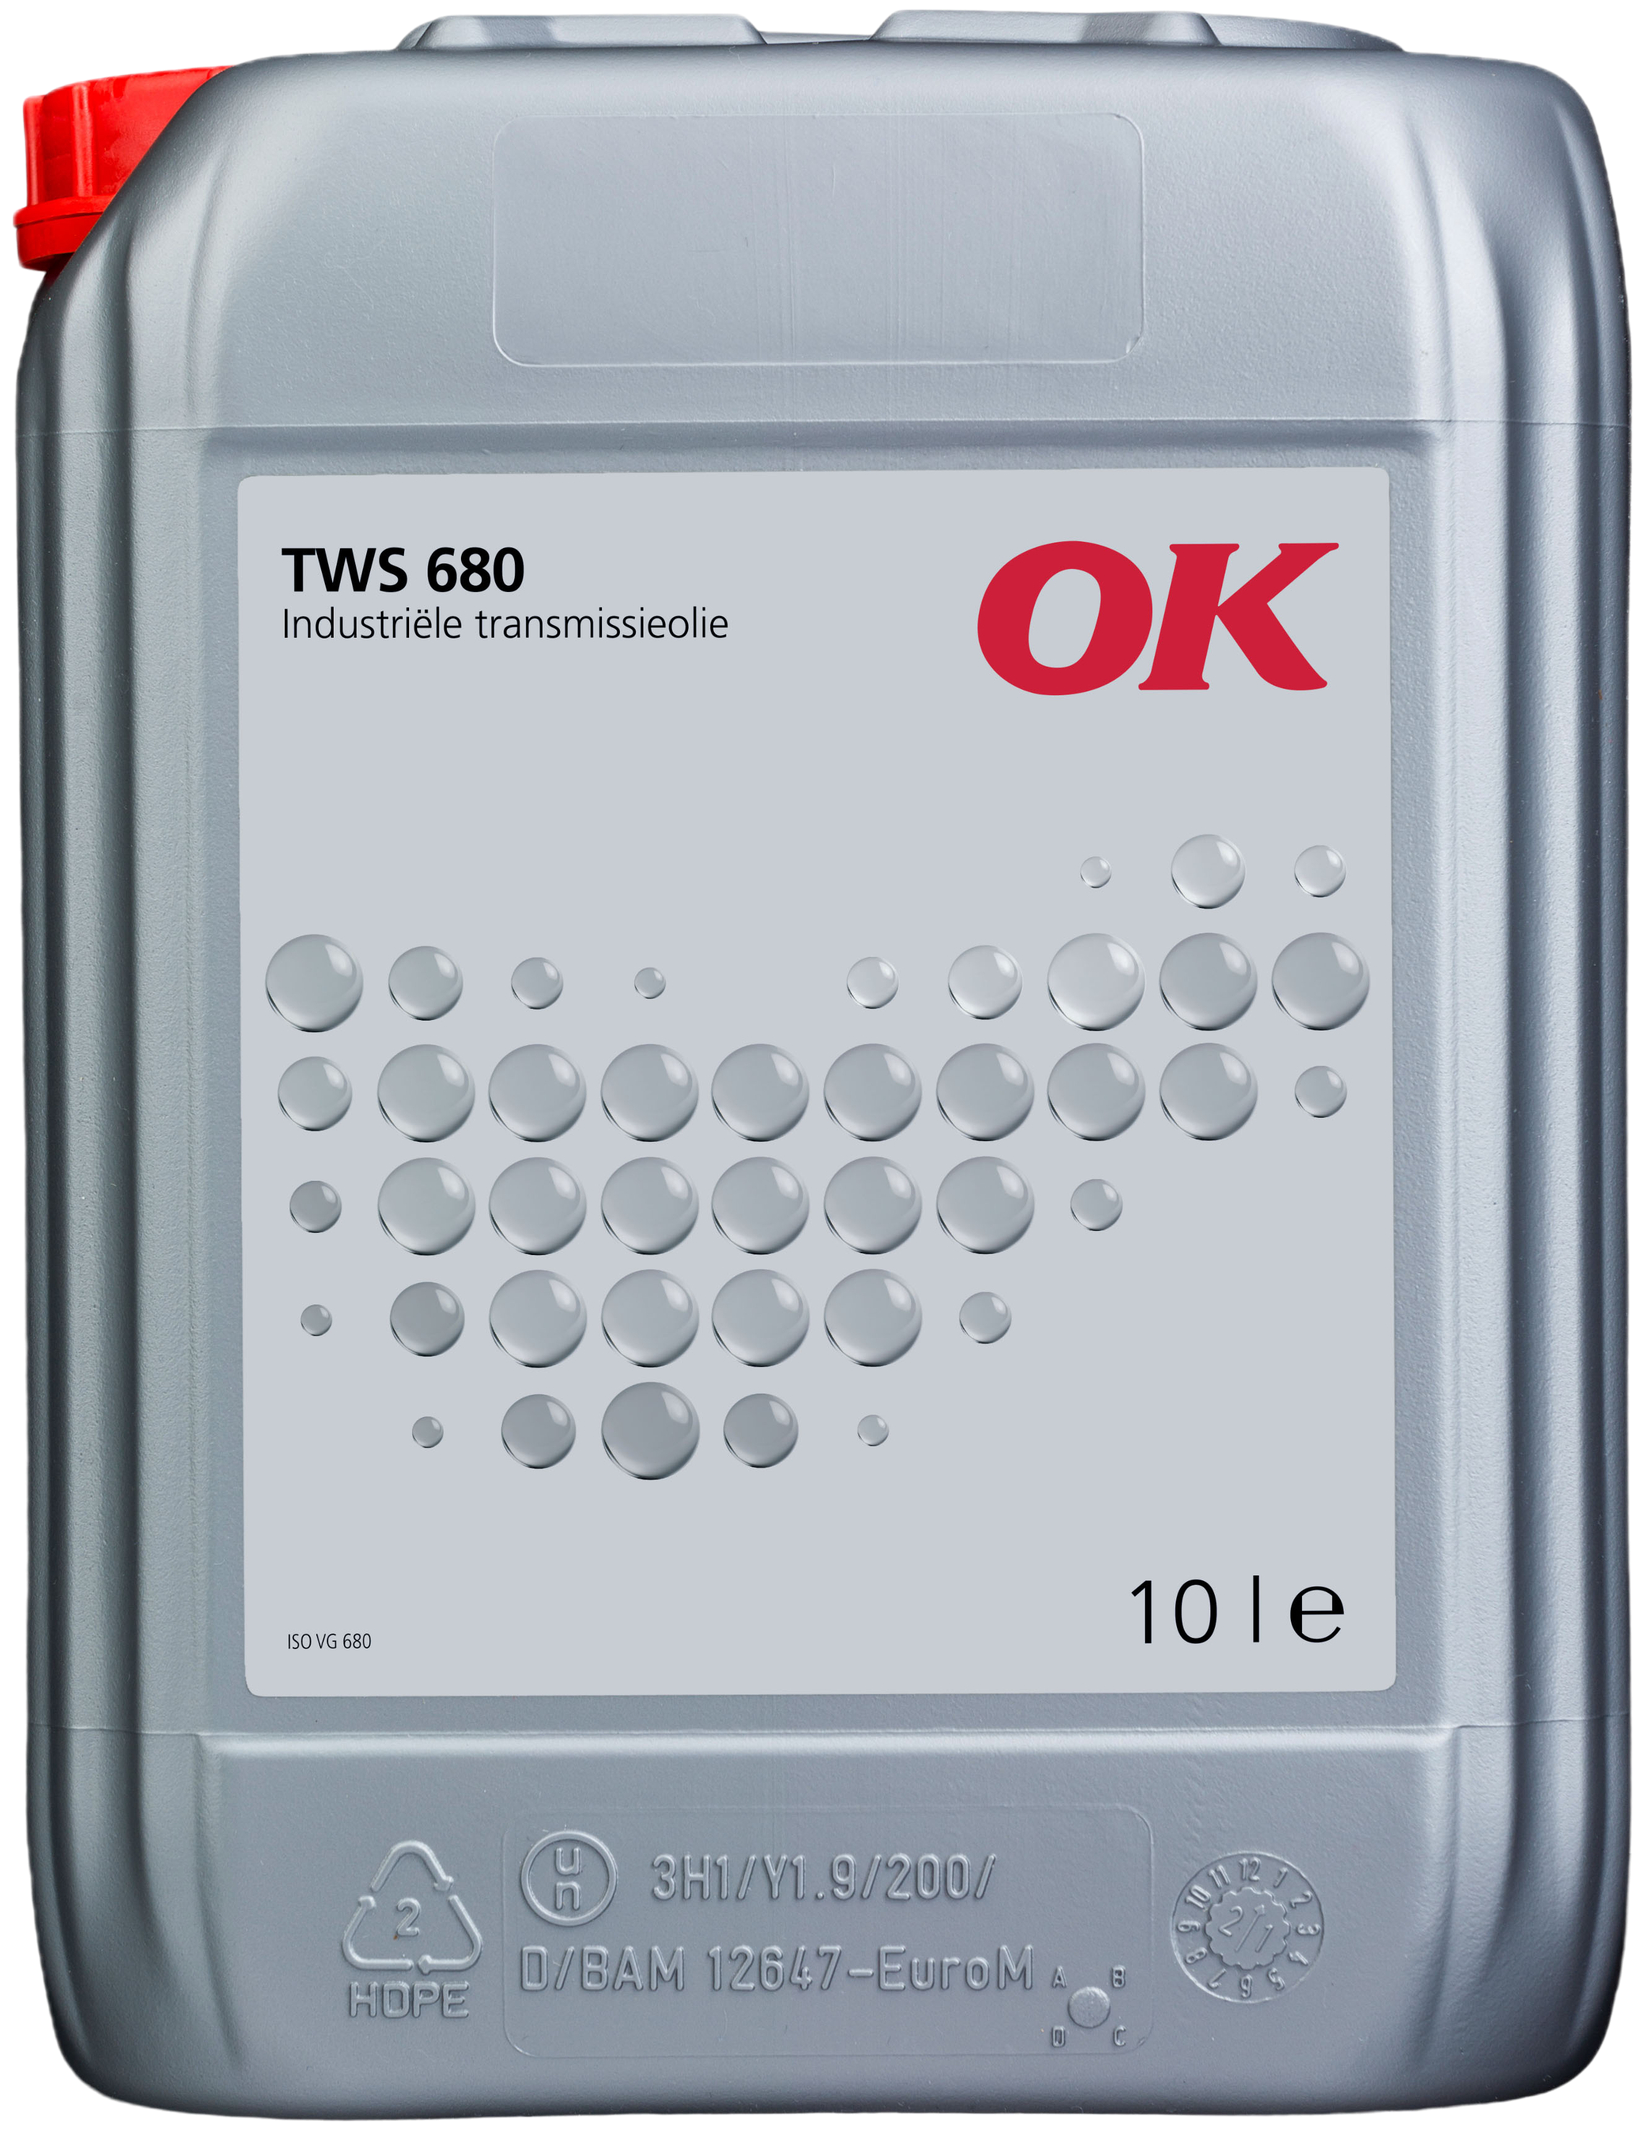 O3806-10 OK TWS 680 is een industriële olie met EP-toevoegingen, geschikt voor smering van vele types overbrengingen.